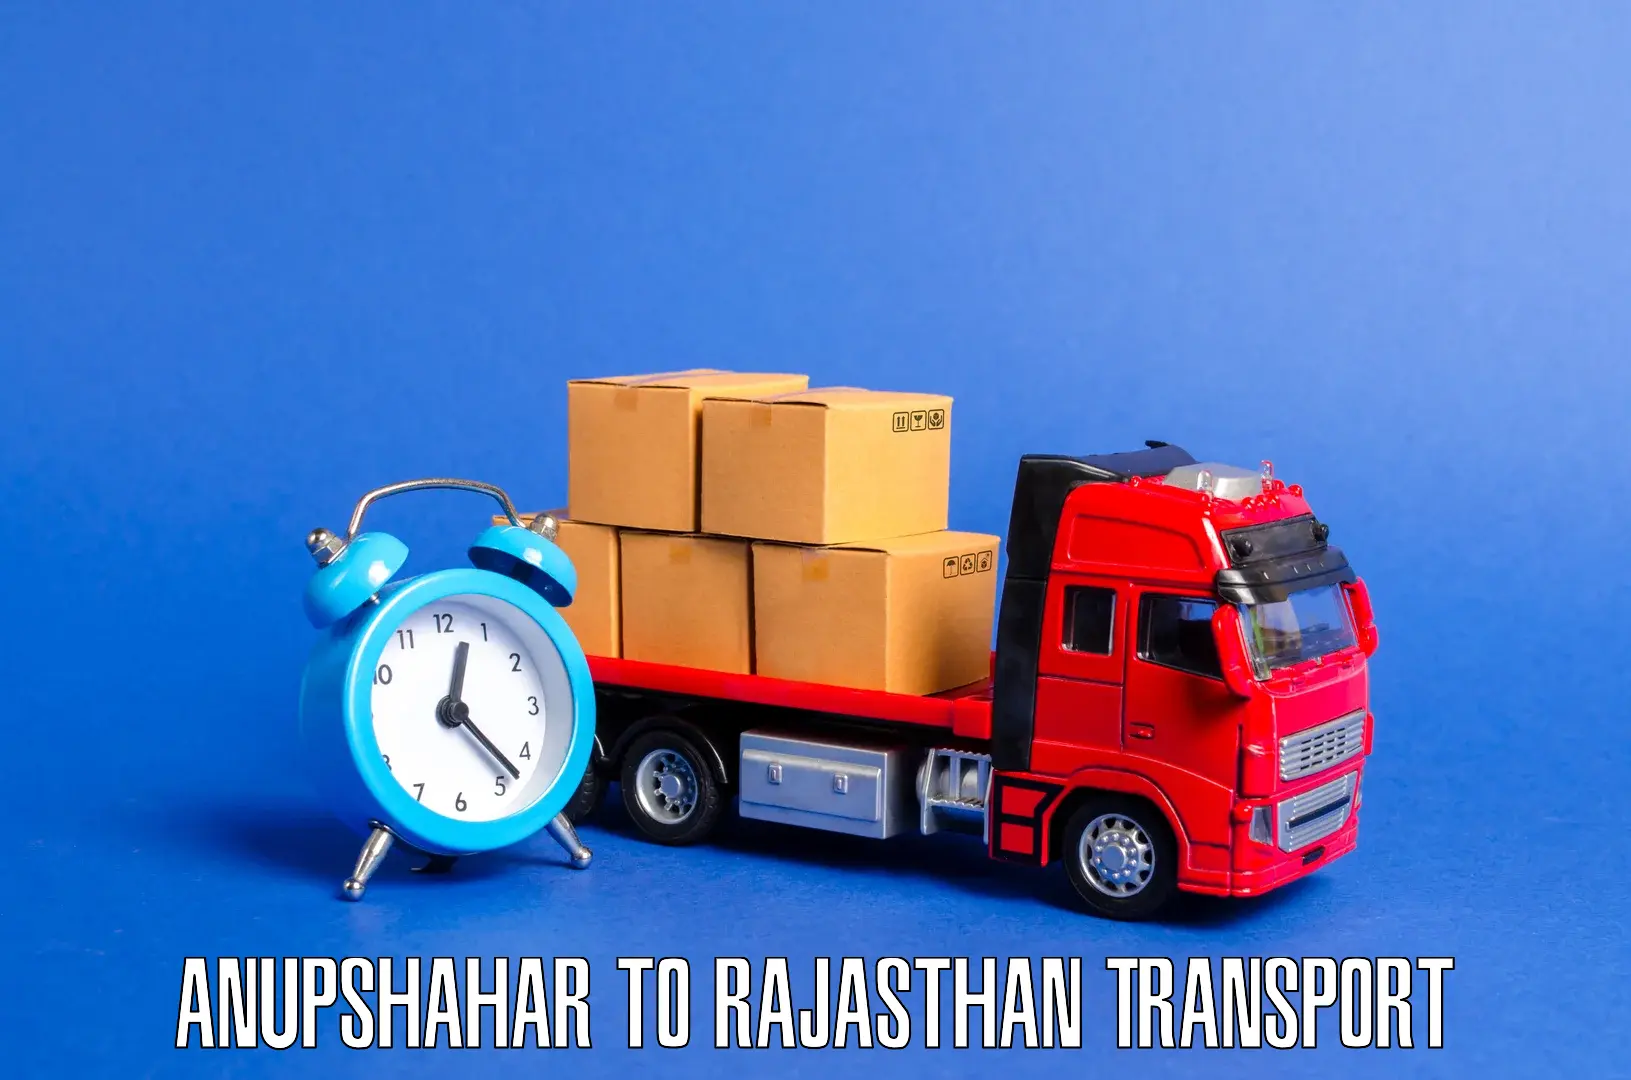 Cargo train transport services Anupshahar to Bhatewar